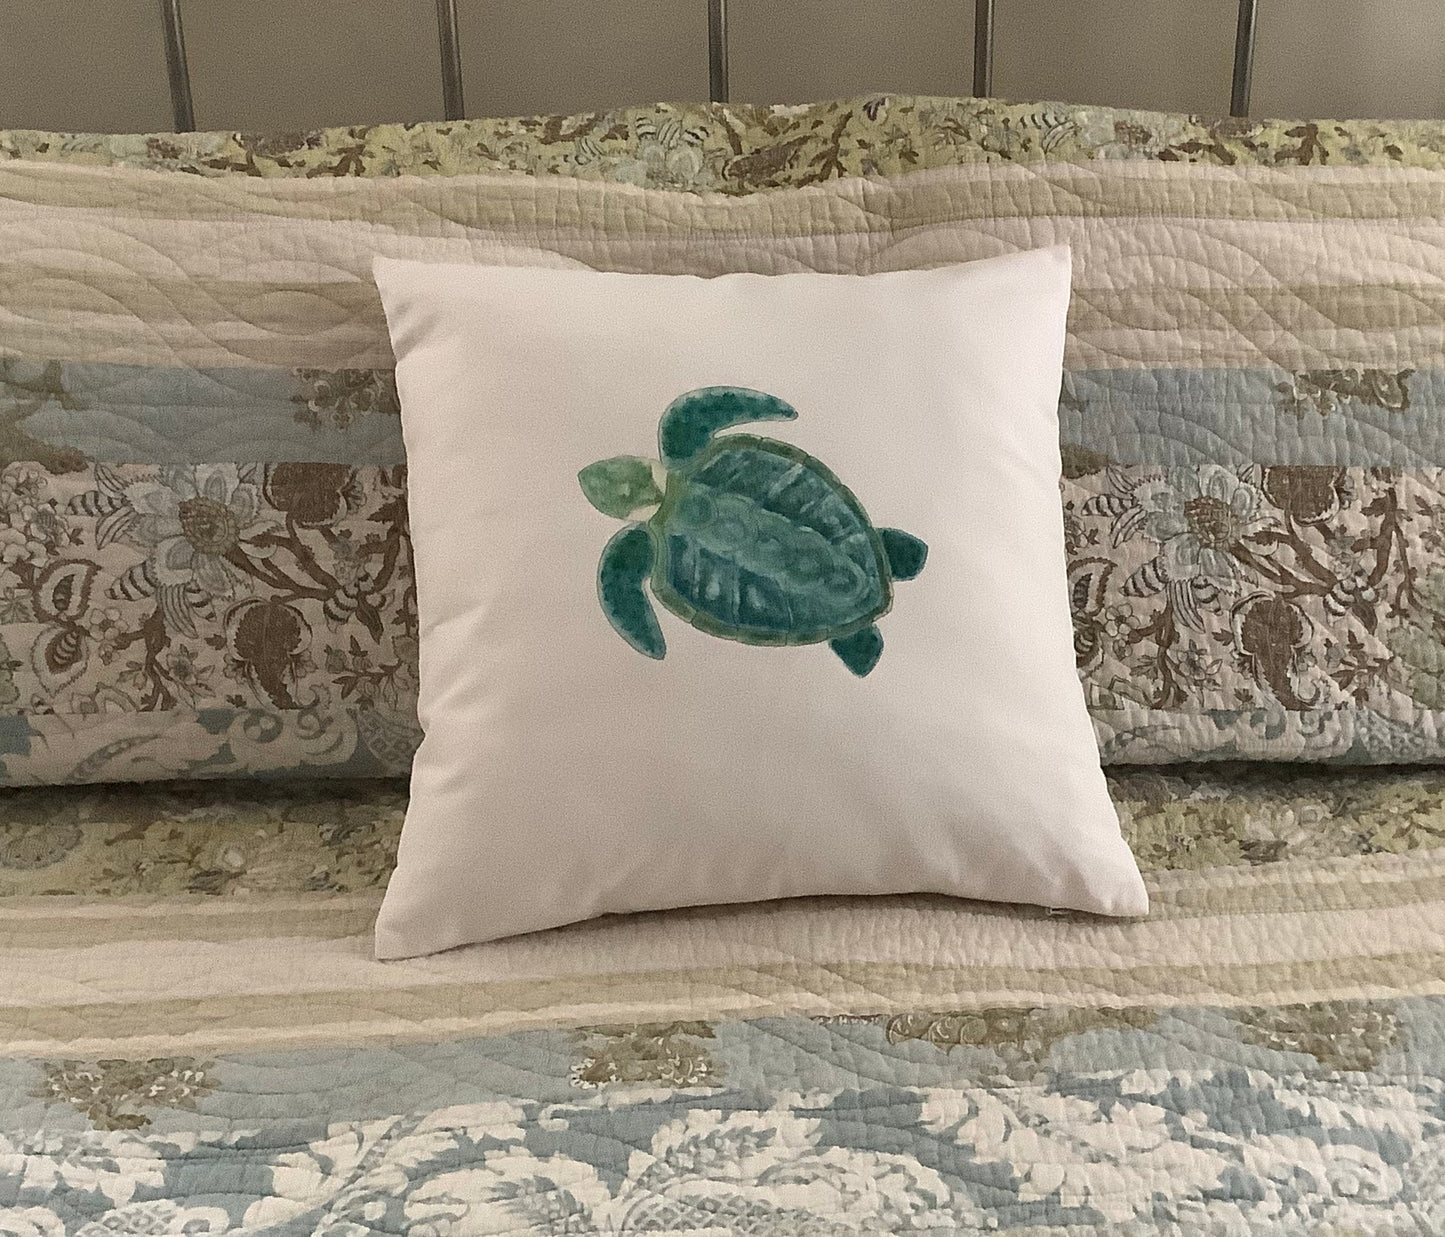 Sea Turtle Decorative Throw Pillow.